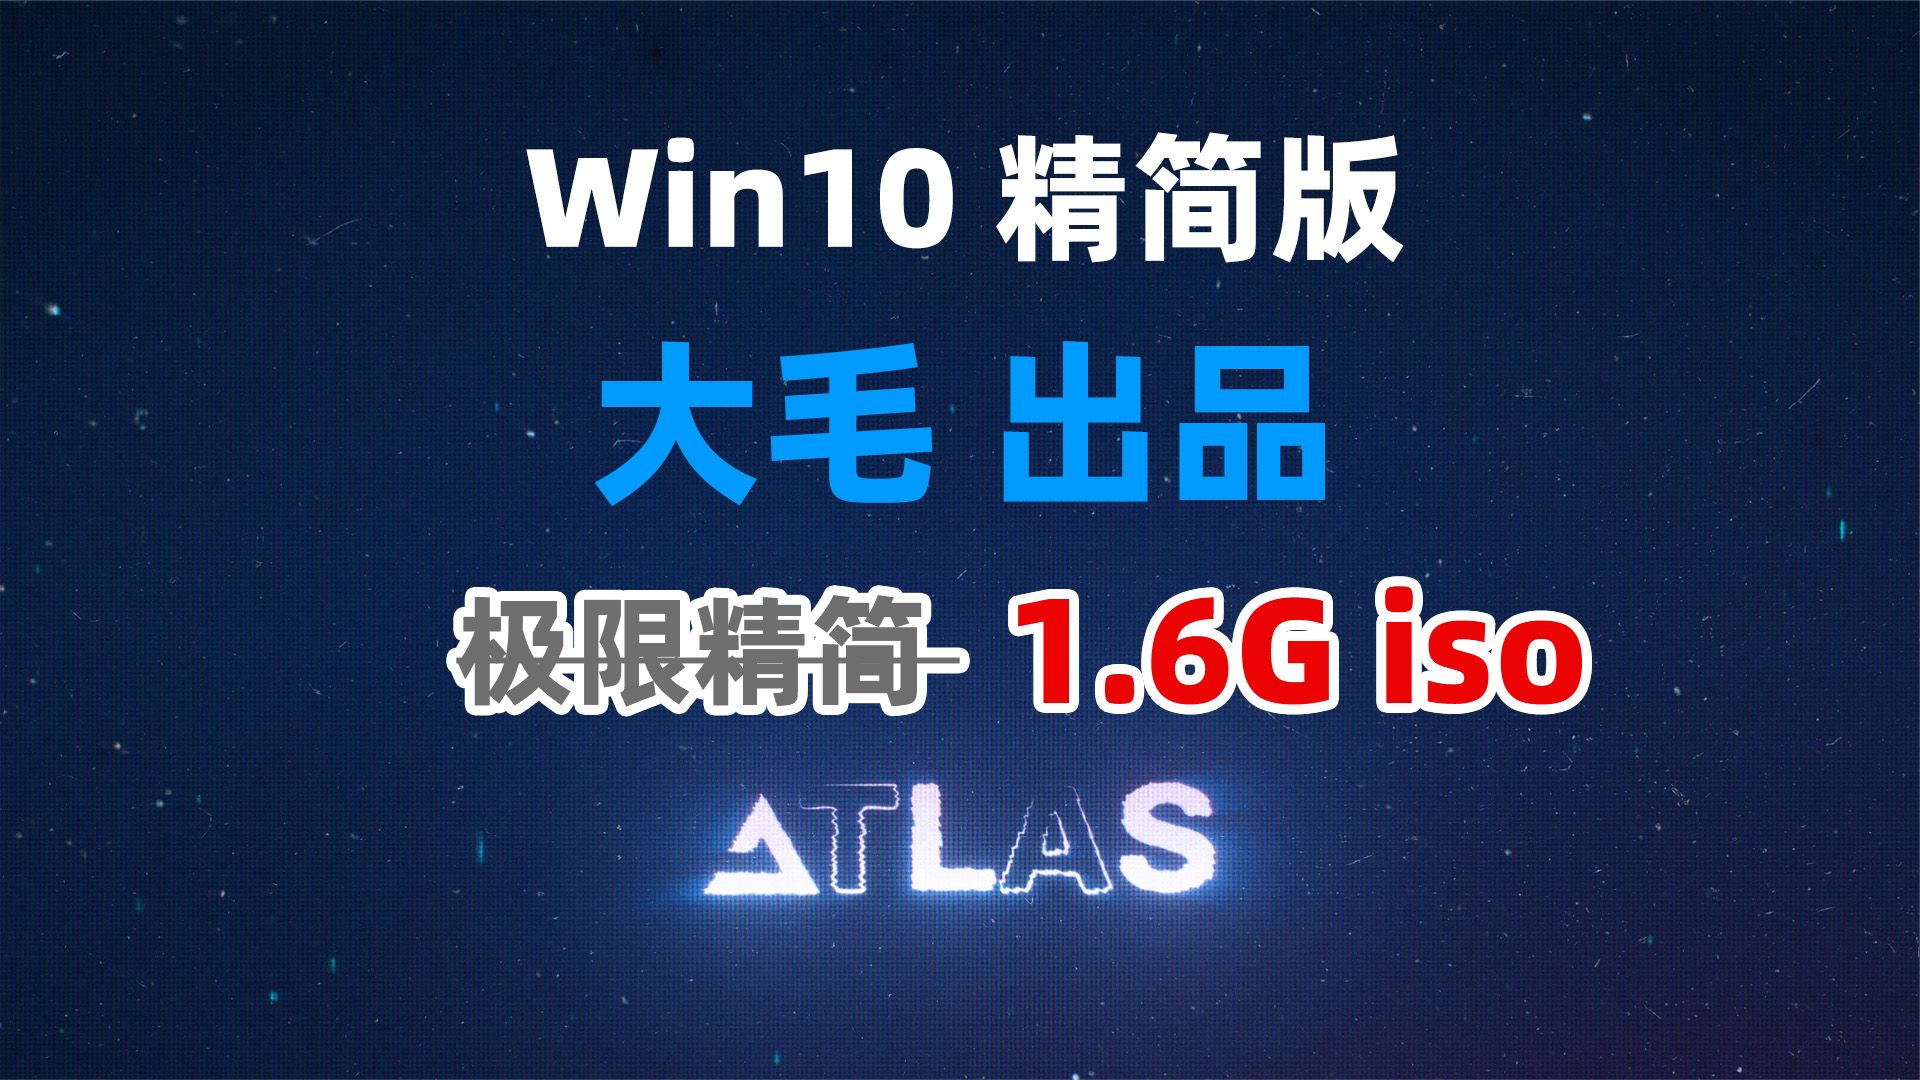 Atlas 来自俄罗斯大神的Win10极限精简版系统 最新21H2 ISO镜像1.6G